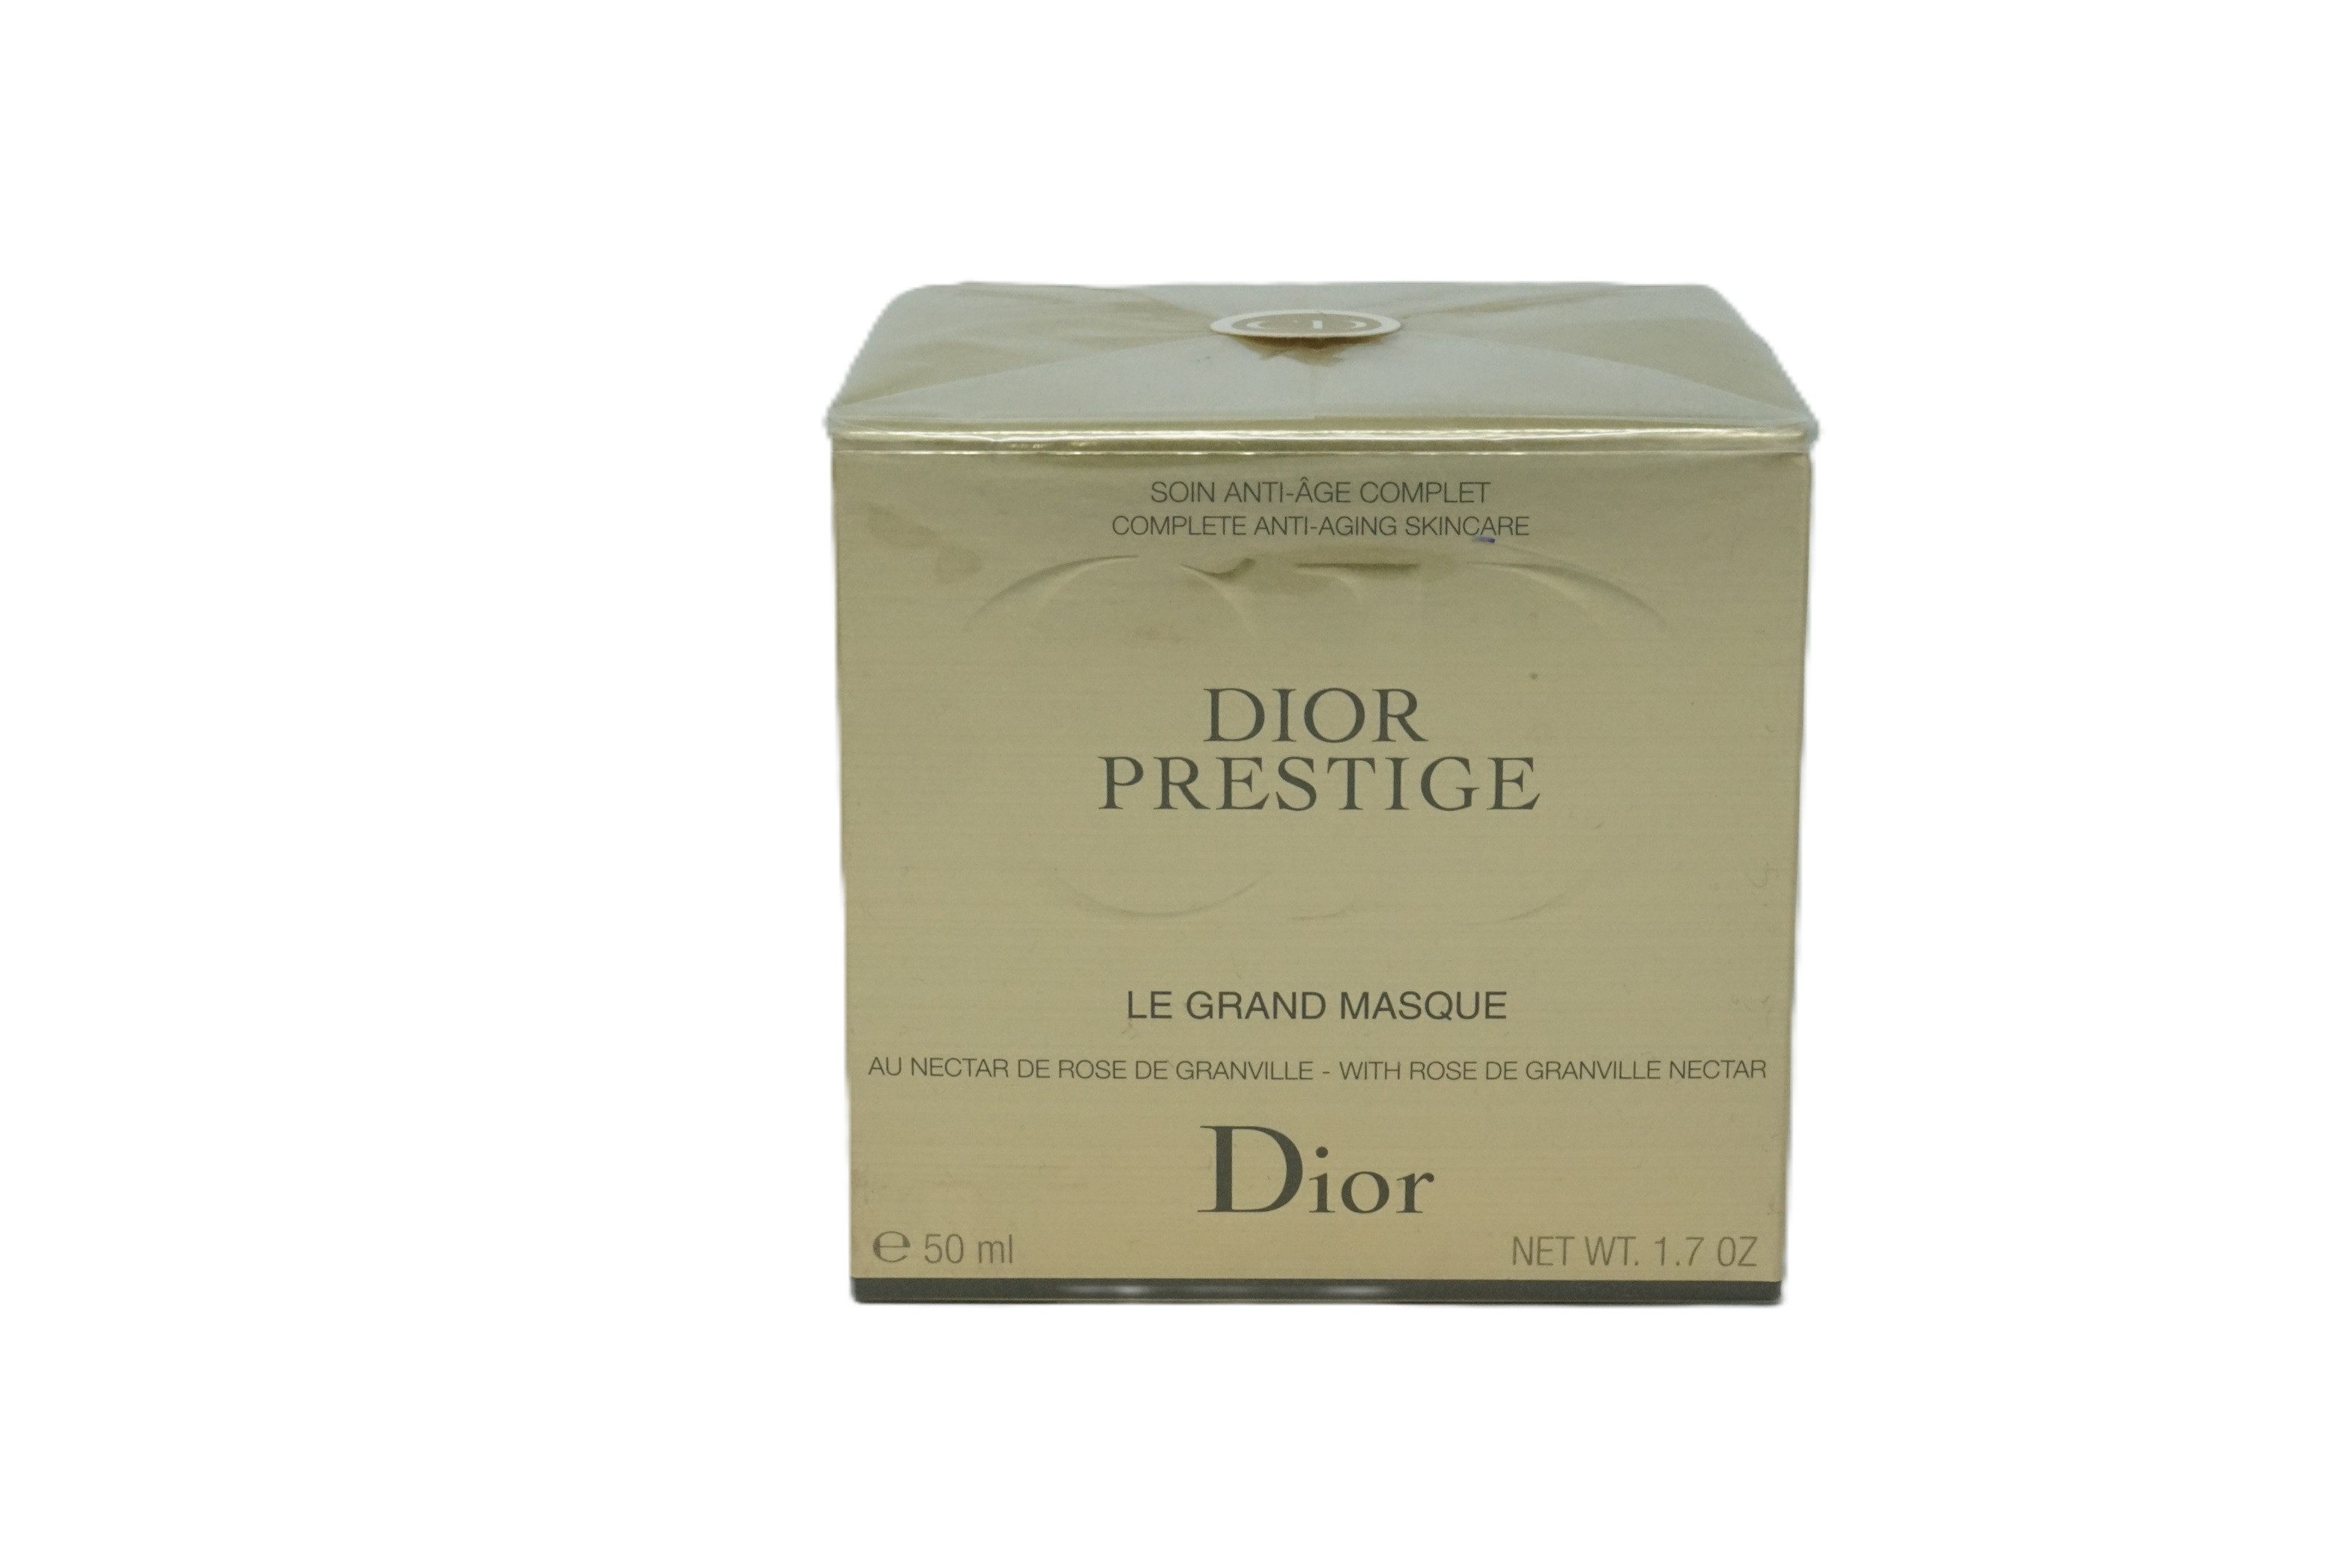 Dior Gesichtsmaske Dior Prestige Gesichtsmaske Rose de Granville 50 ml